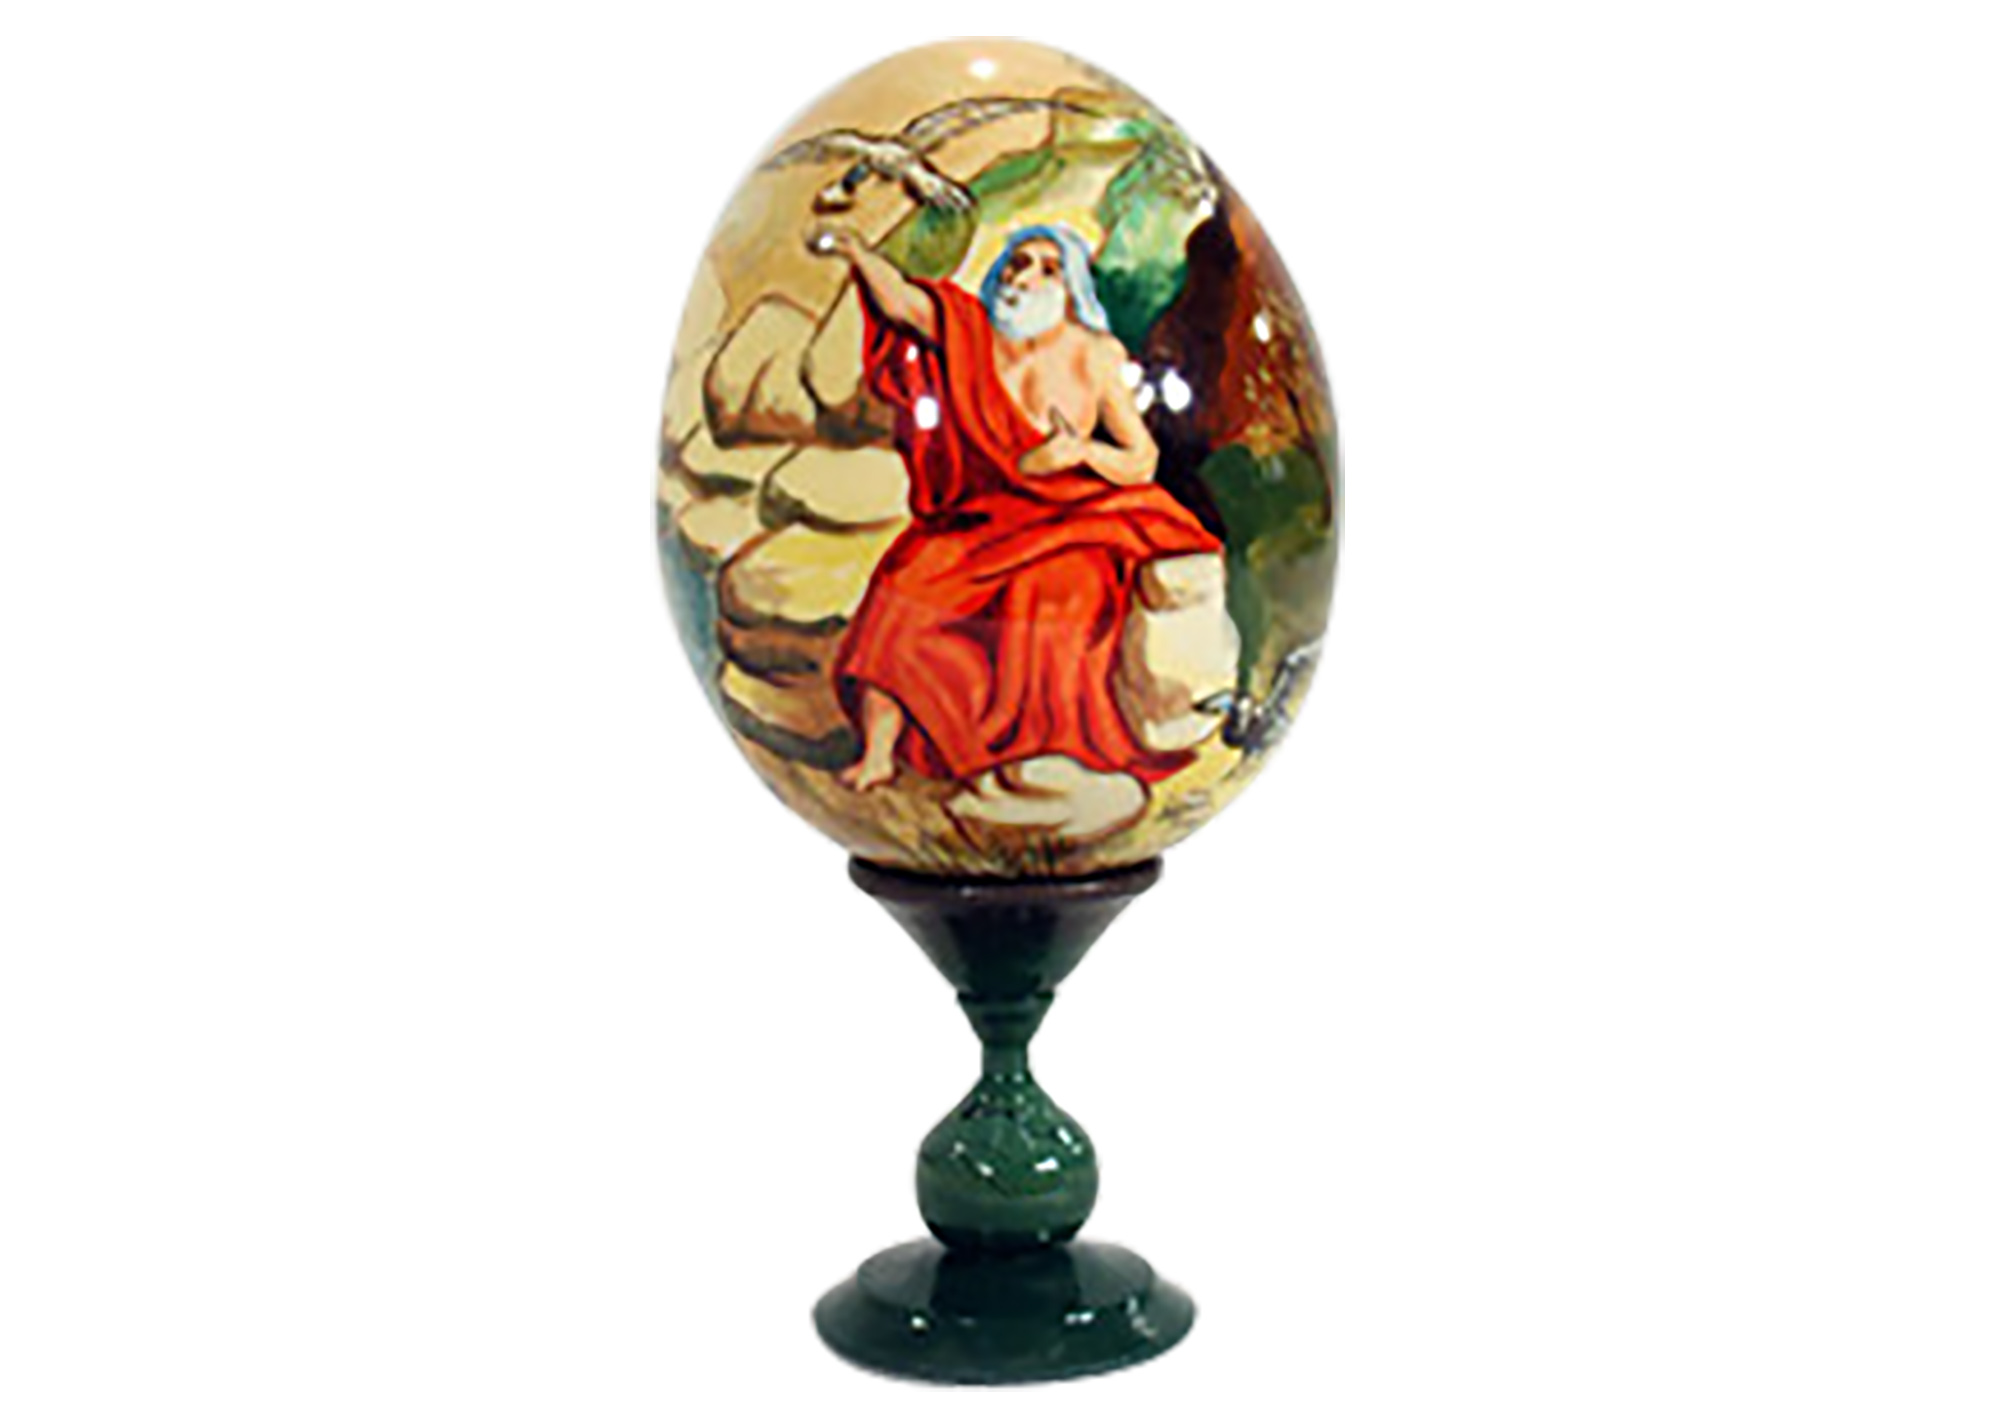 Buy Декоративное яйцо "Пророк Илия" 10 см at GoldenCockerel.com